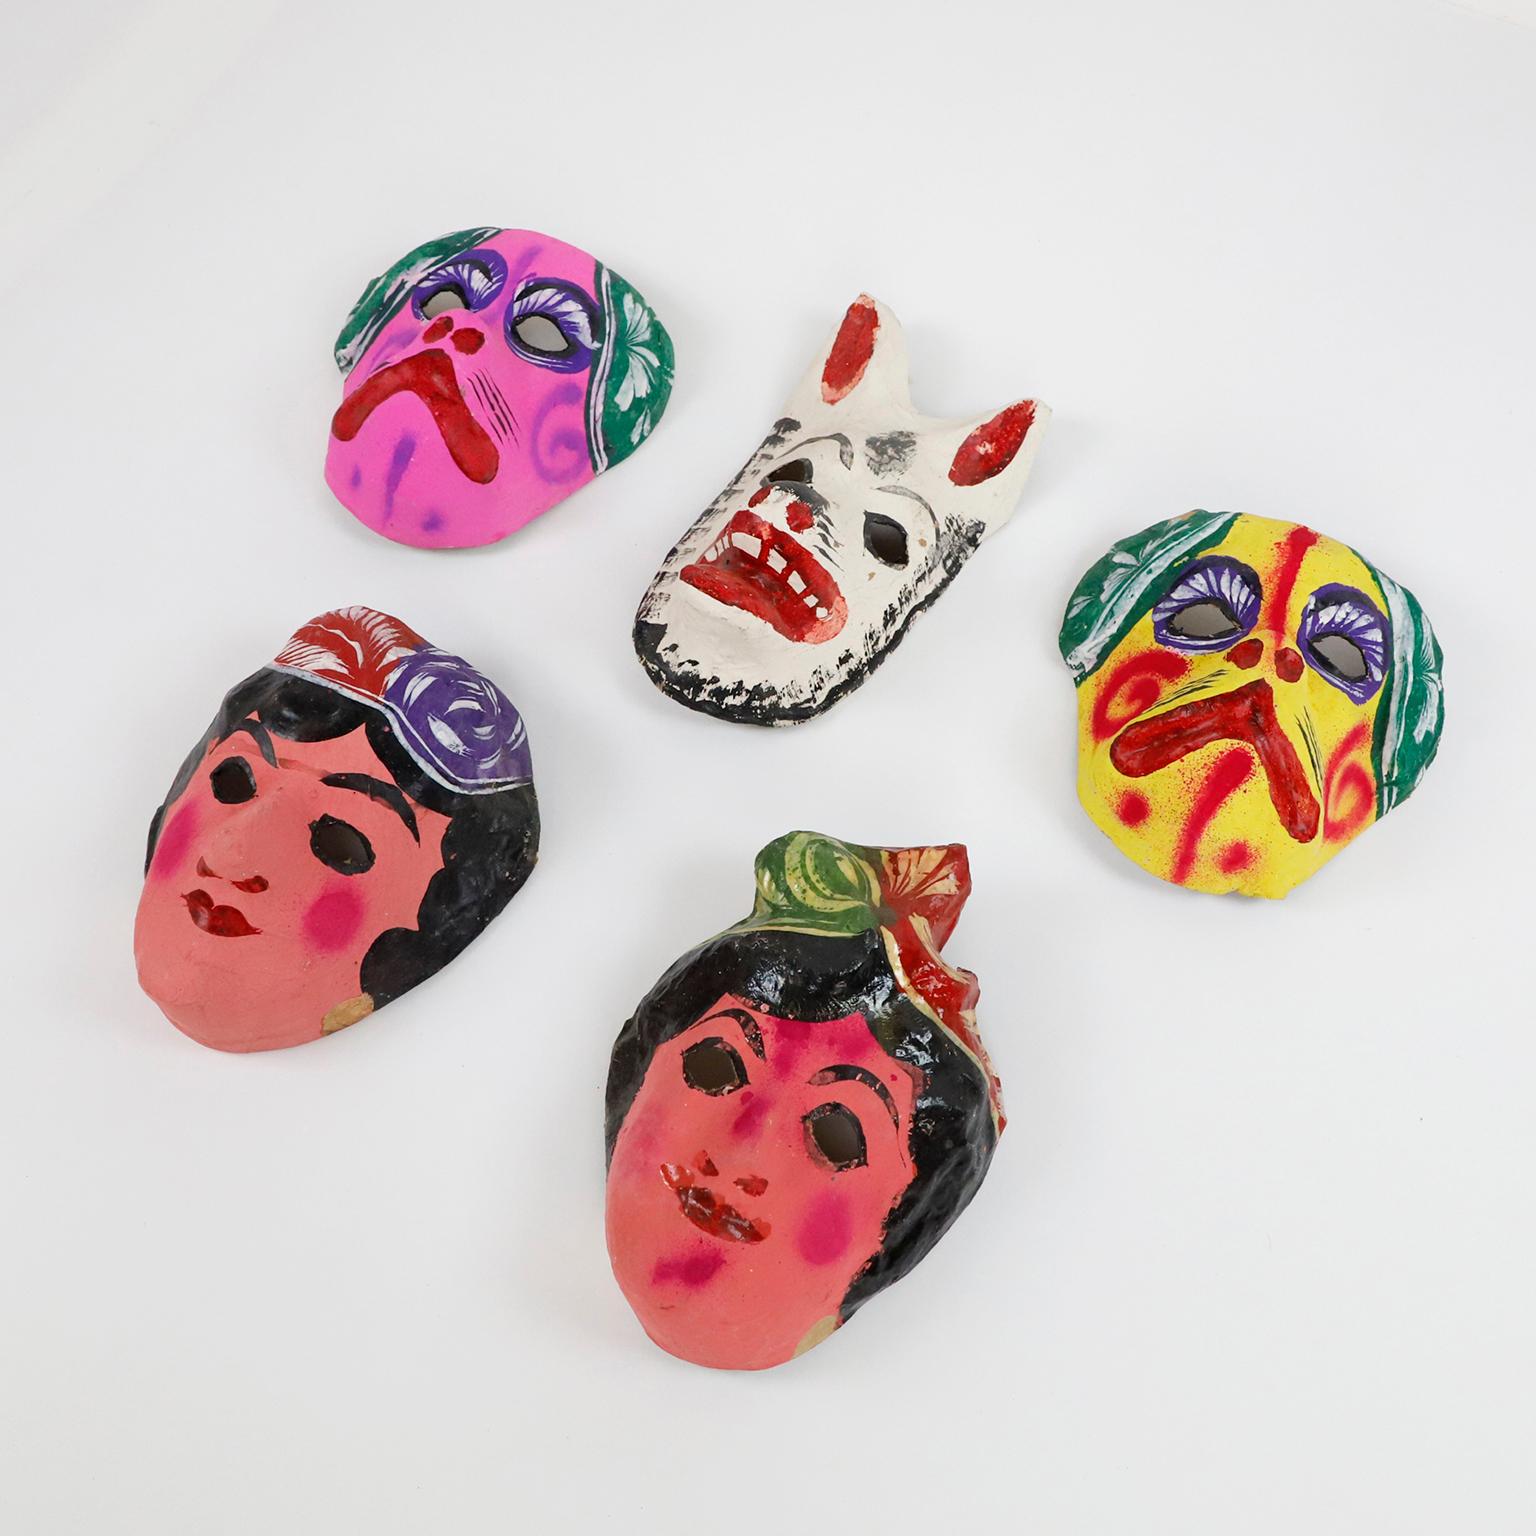 Circa 1960. Wir bieten dieses antike Set von 5 mexikanischen Pappmaché-Masken an, die zu 100% handgefertigt und mit Anilin (natürlichen Pigmenten) bemalt sind.